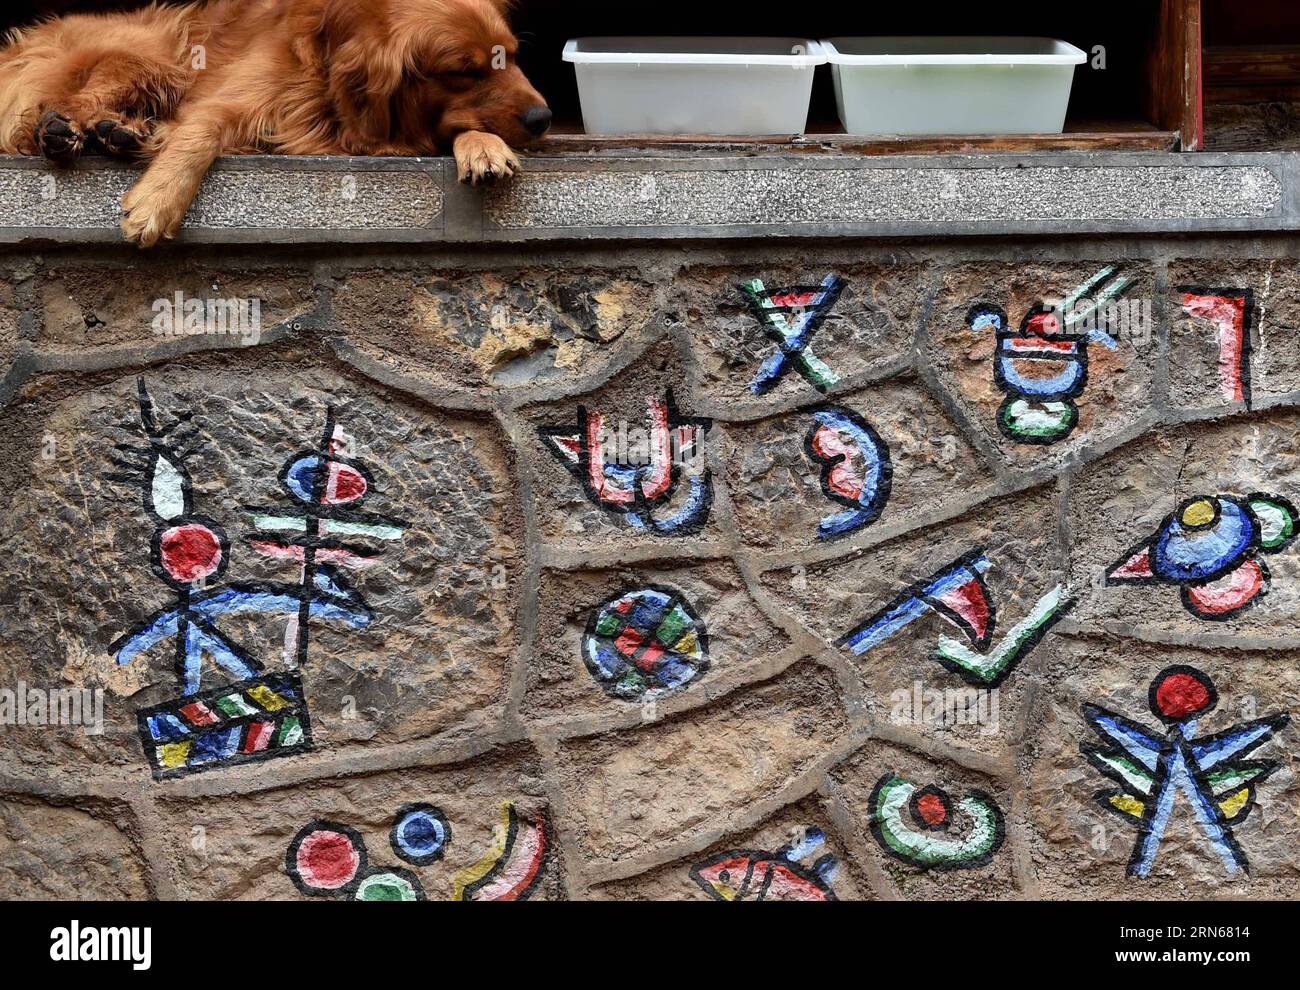 (150715) -- LIJIANG, 14. Juli 2015 -- Ein Hund ruht vor einem Geschäft in Shuhe der antiken Stadt Lijiang, Südwestchinas Provinz Yunnan, 14. Juli 2015. Als Teil der antiken Stadt Lijiang, die 1997 von der UNESCO zum Weltkulturerbe erklärt wurde, zieht Shuhe viele Besucher an. ) (Zwx) CHINA-YUNNAN-LIJIANG-SHUHE ANTIKE STADT(CN) LinxYiguang PUBLICATIONxNOTxINxCHN 150715 Lijiang 14. Juli 2015 ein Hund liegt außerhalb eines Shops in Shuhe von Lijiang ANTIKE Stadt Südwesten Chinas S Yunnan Provinz 14. Juli 2015 als Teil der Lijiang Antike Stadt, die als Weltkulturerbe aufgeführt ist Stockfoto